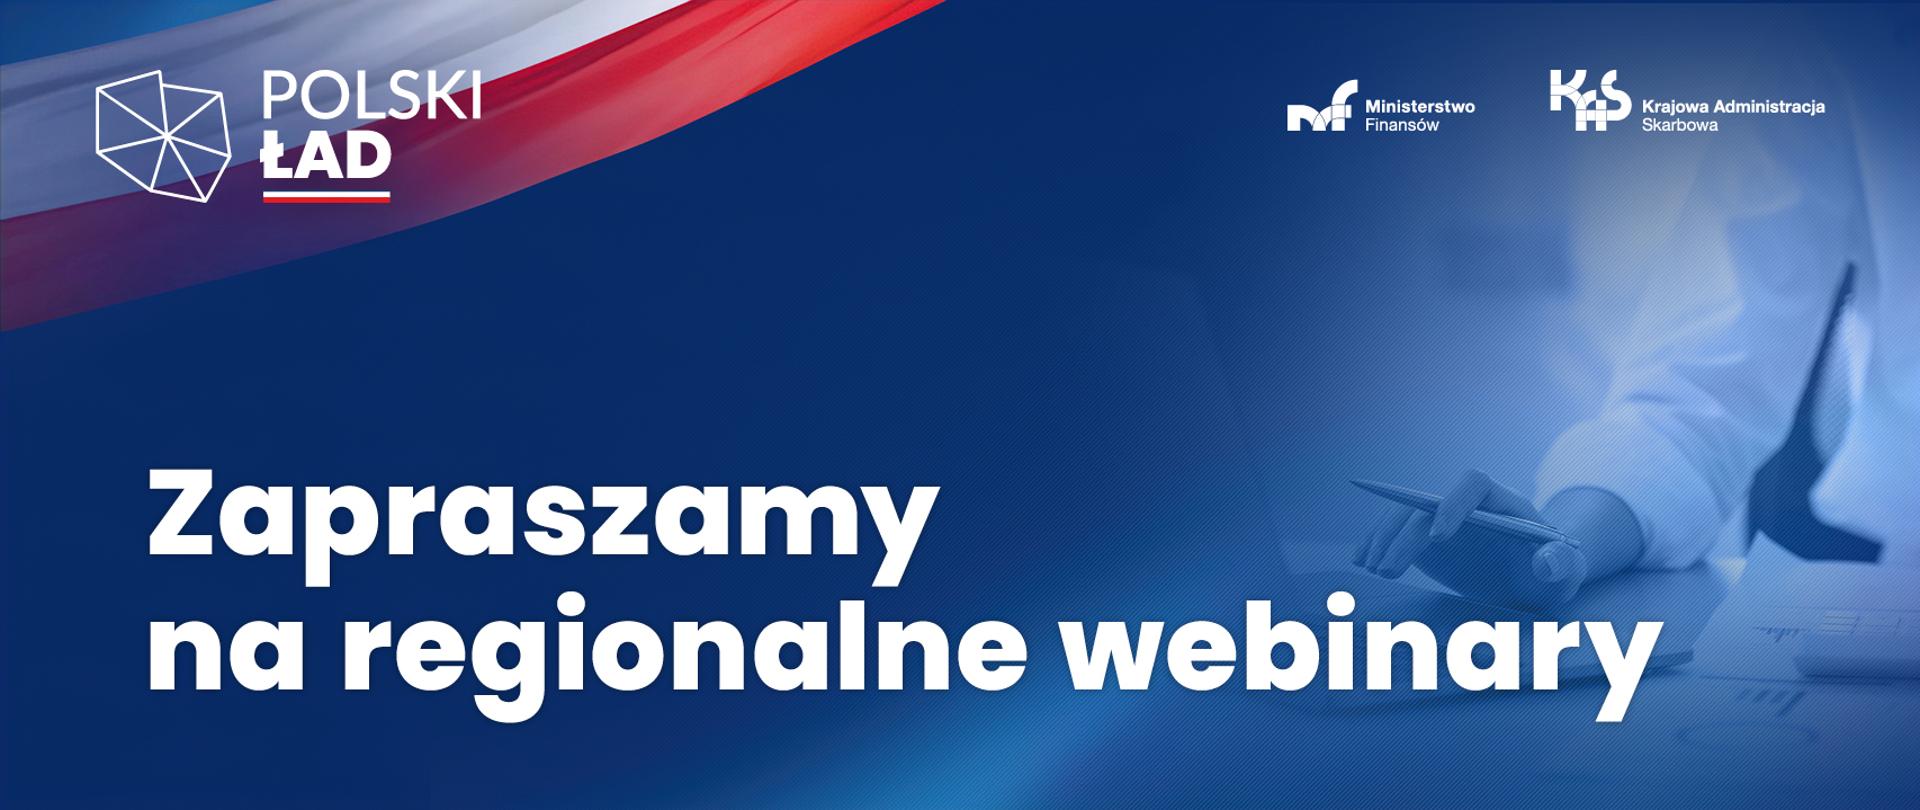 Kontur Polski napis Polski Ład i Zapraszamy na regionalne webinary